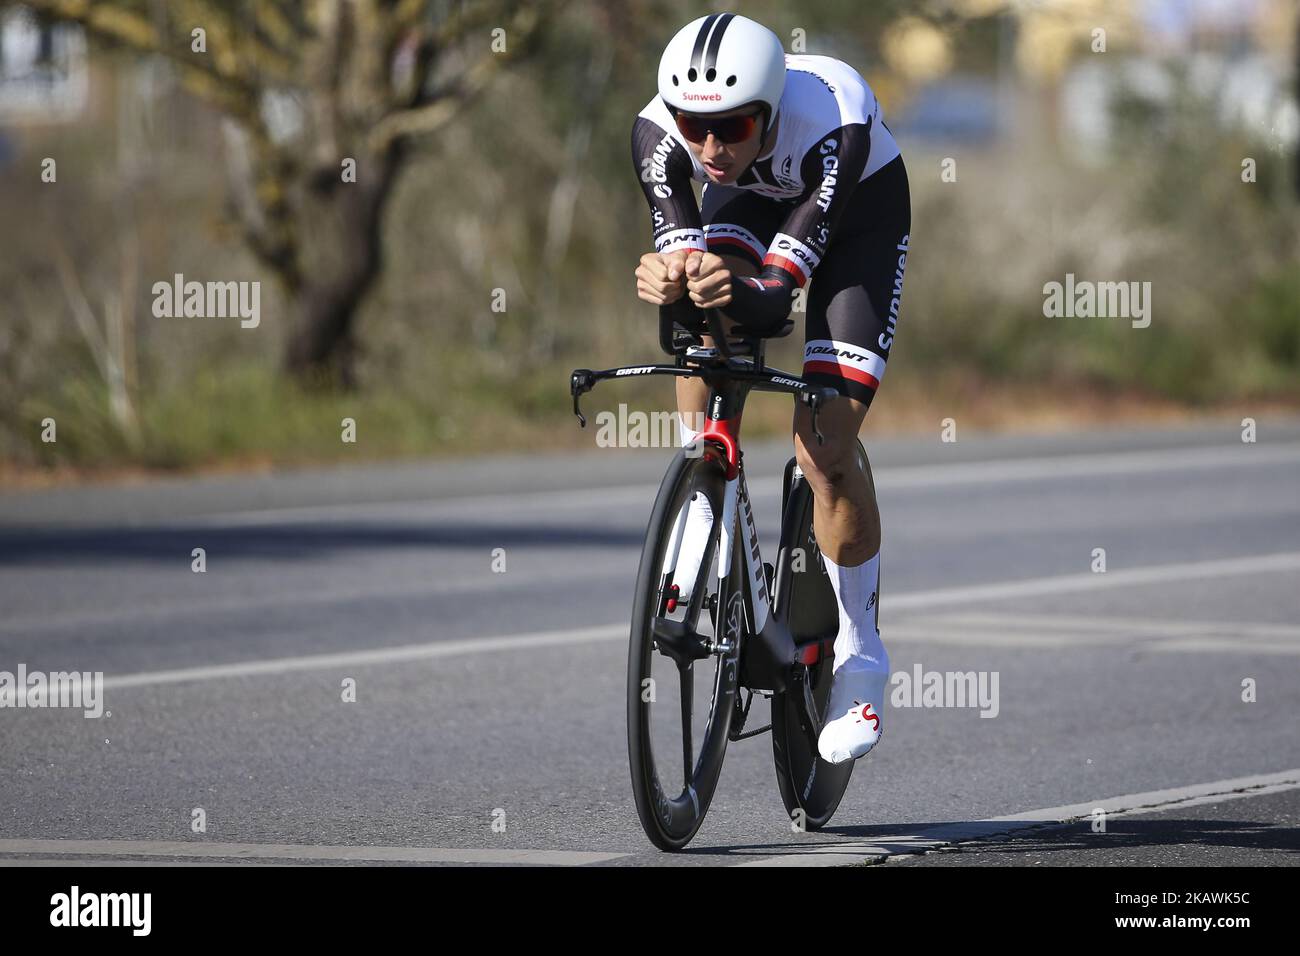 Jai Hindley del Team Sunweb durante la 3rd tappa del Tour ciclistico di Algarve tra Lagoa e Lagoa, il 16 febbraio 2018. (Stampa LM/NurPhoto) Foto Stock